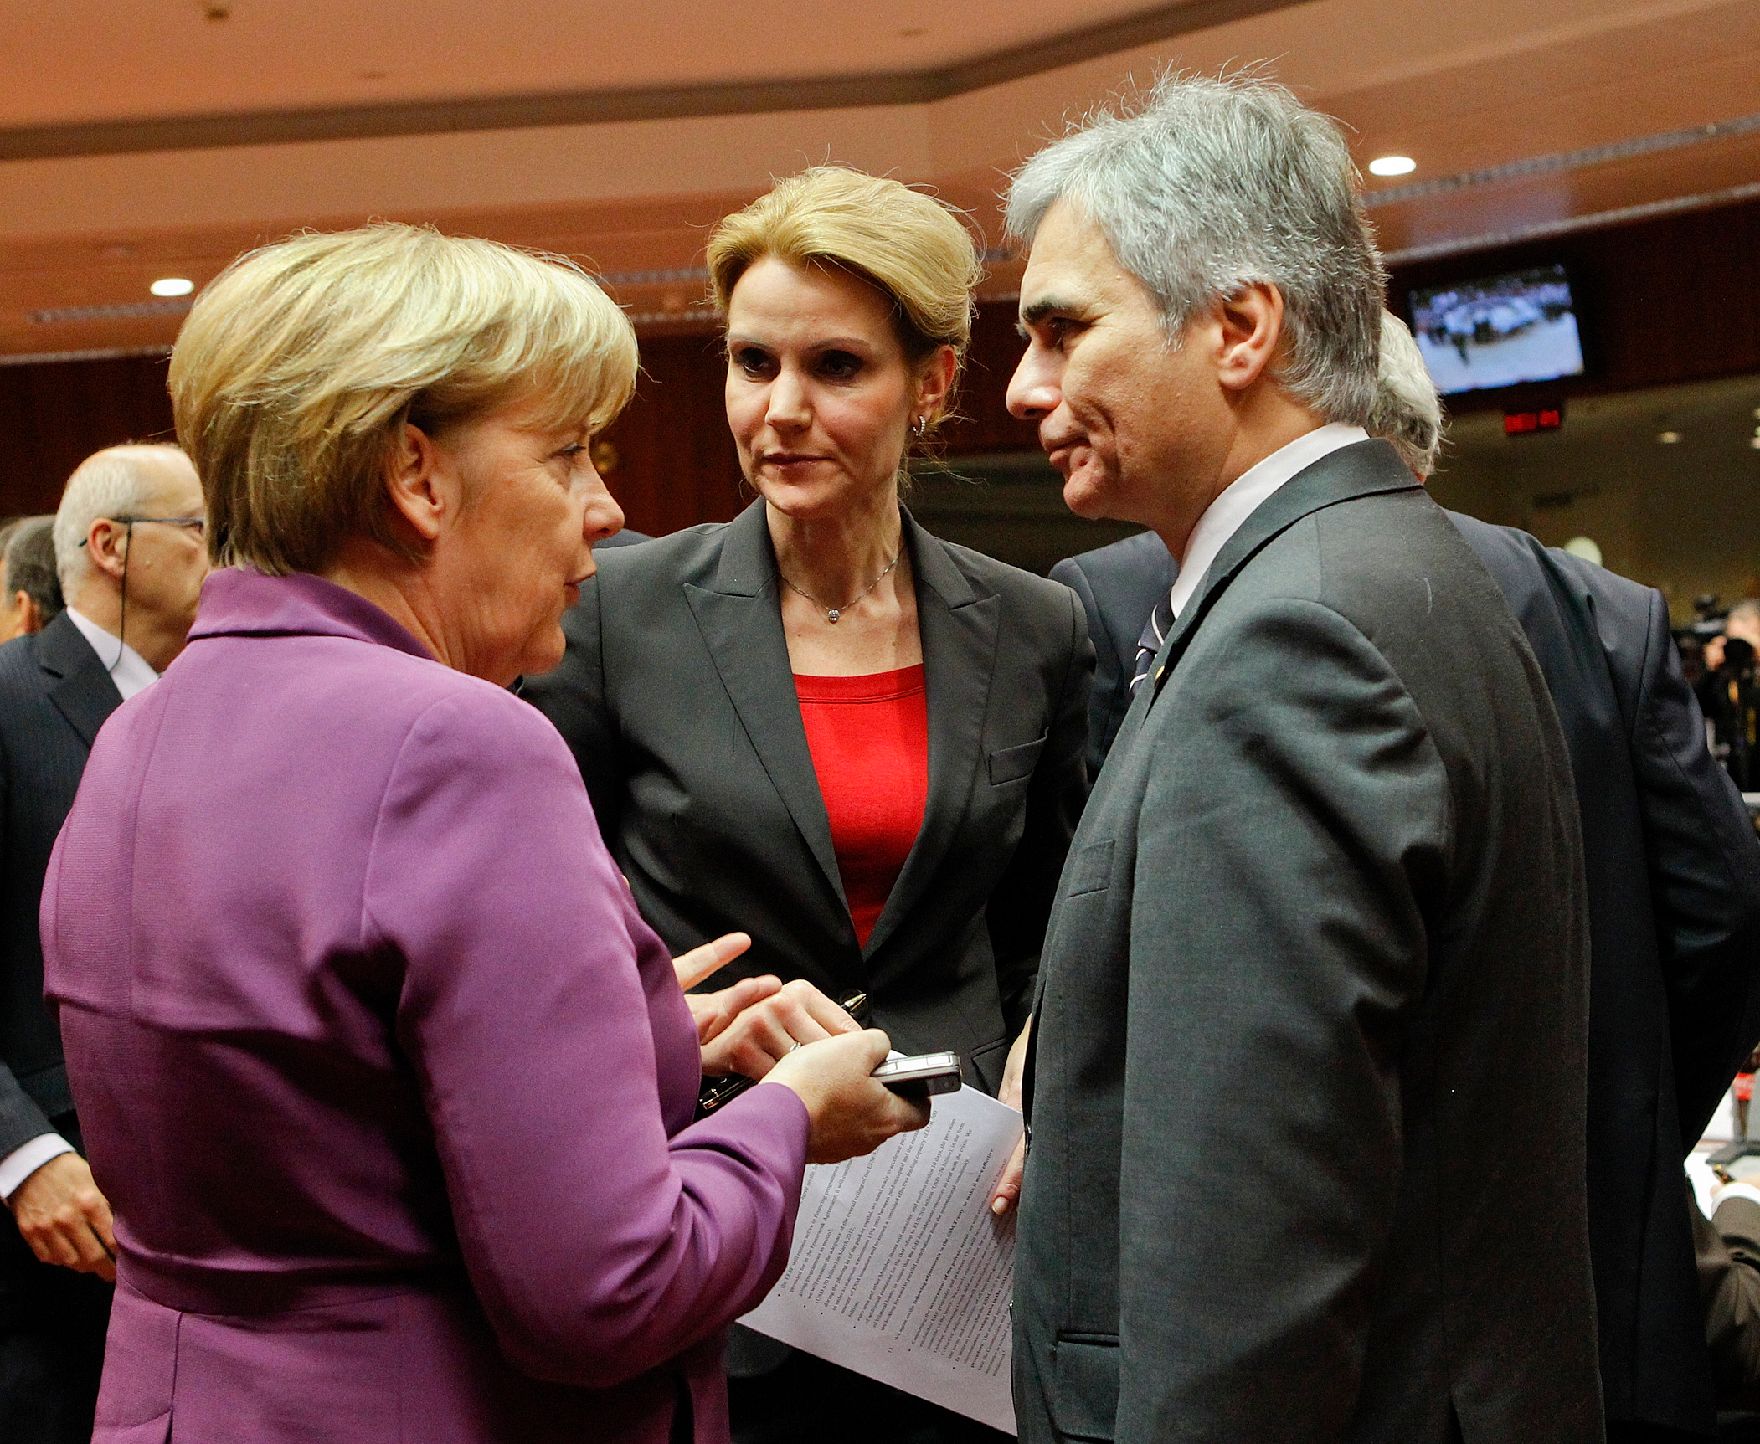 Am 9. Dezember 2011 endete in Brüssel der zweitägige Europäische Rat der EU-Staats- und Regierungschefs. Im Bild Bundeskanzler Werner Faymann (r.) mit der deutschen Bundeskanzlerin Angela Merkel (l.) und der dänischen Premierministerin Hellen Thorning-Schmidt (m.).